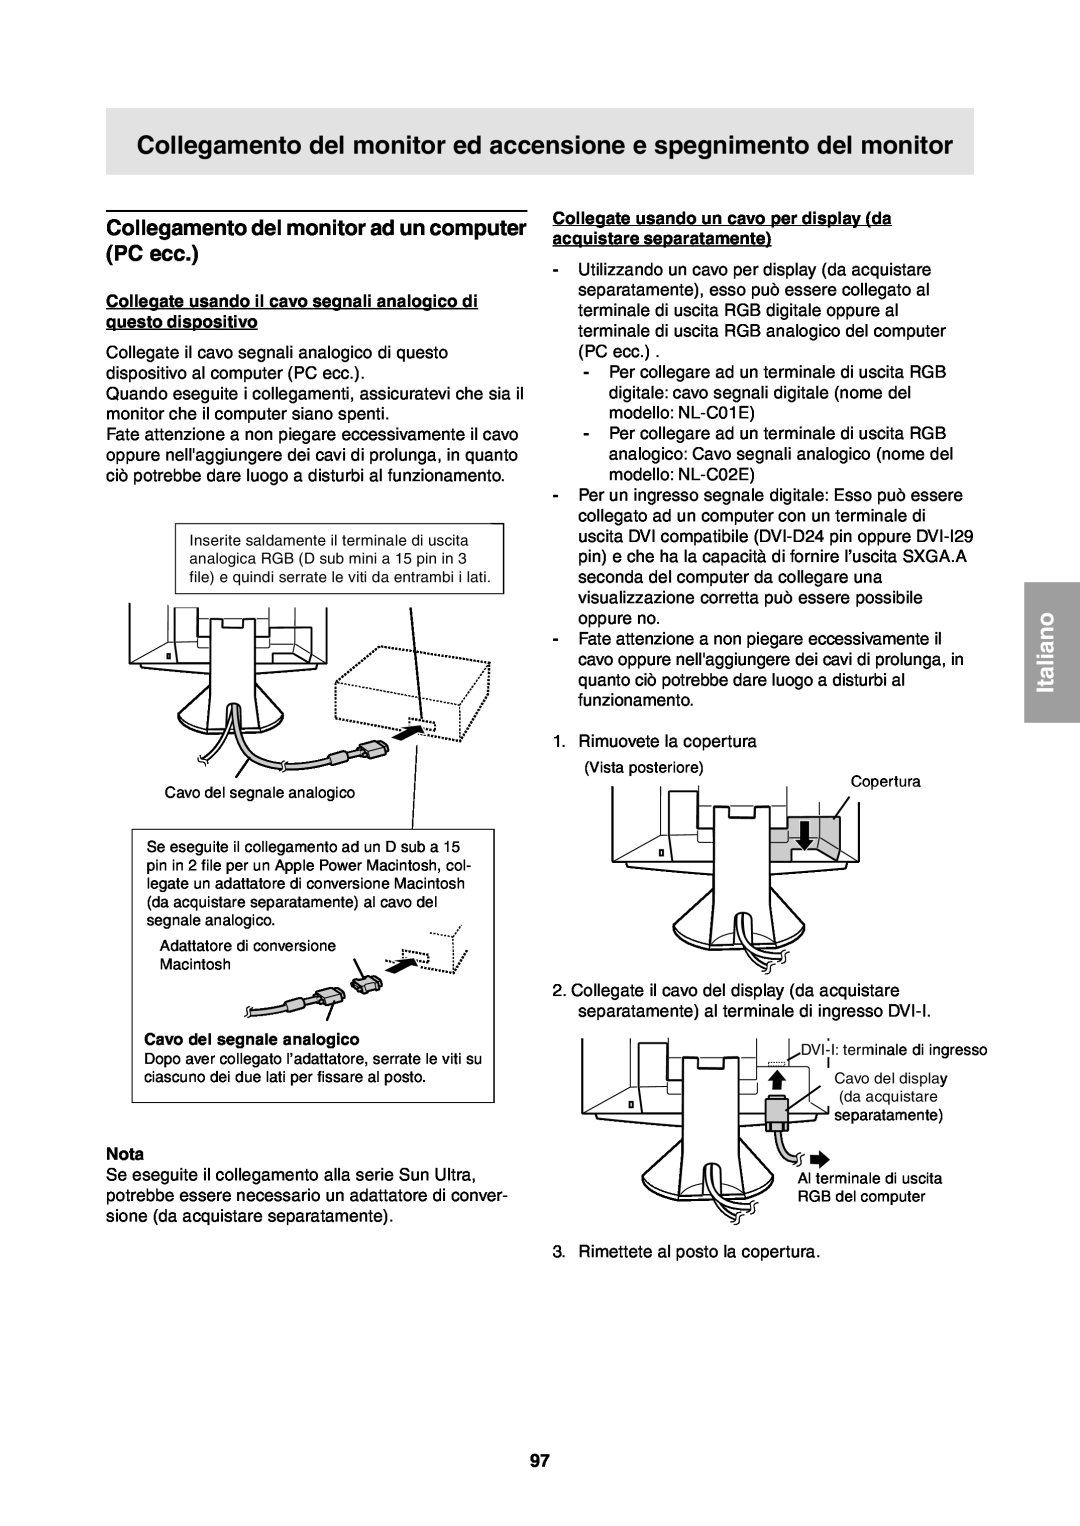 Sharp LL-T1811W operation manual Collegamento del monitor ed accensione e spegnimento del monitor, Italiano, Nota 